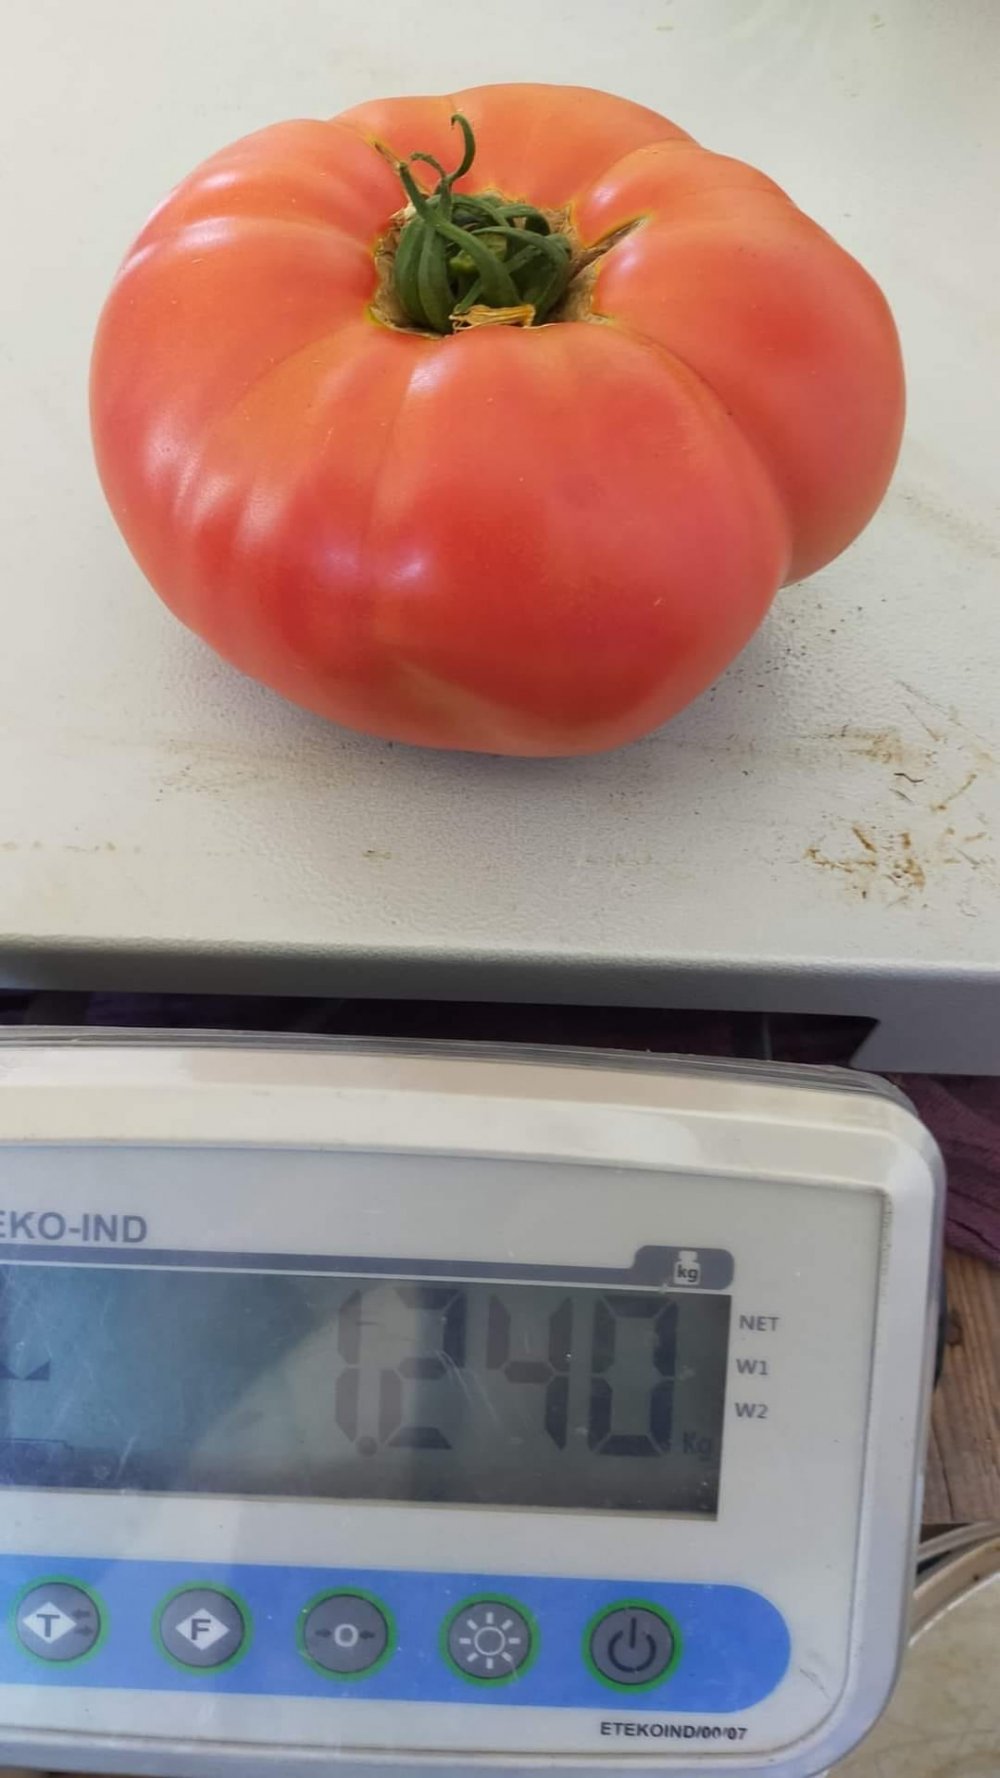 Çameli’de serada yetiştirilen hormonsuz organik domatesin tanesi 1 kilo 240 gram geldi. Sosyal medyada paylaşılan ve oldukça ilgi gören hormonsuz domatesi almak isteyenler sıraya girdi.